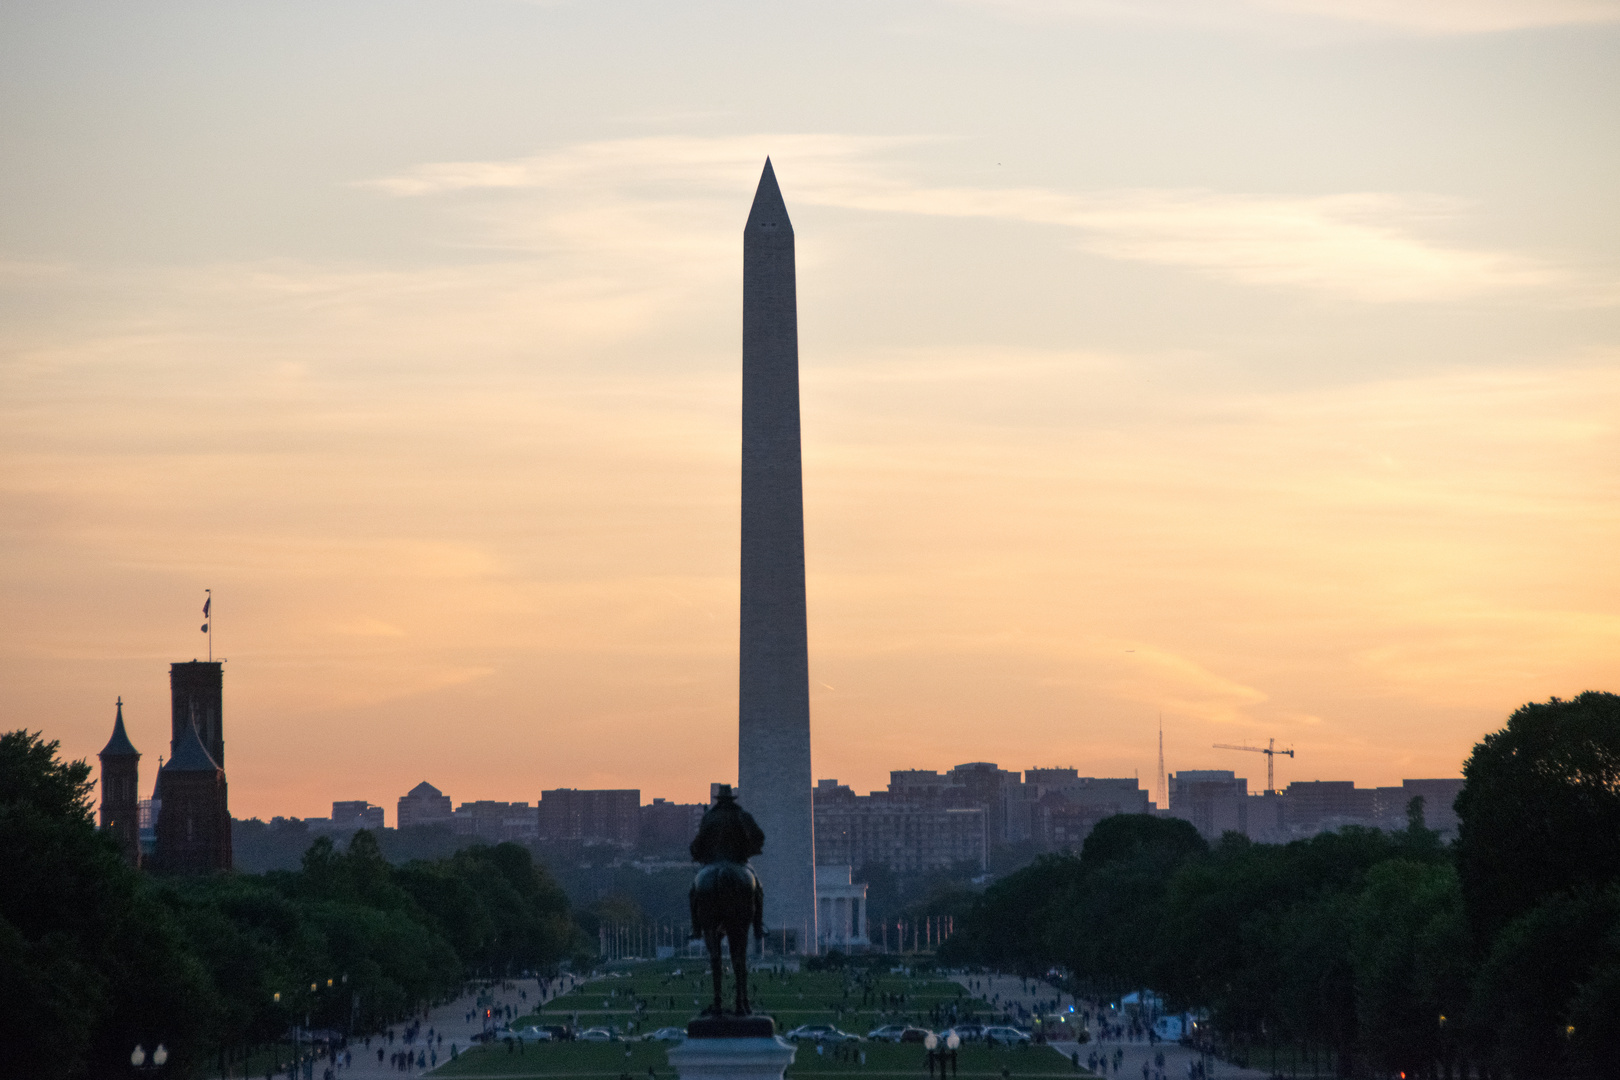 2019 06 14 Washington Monument